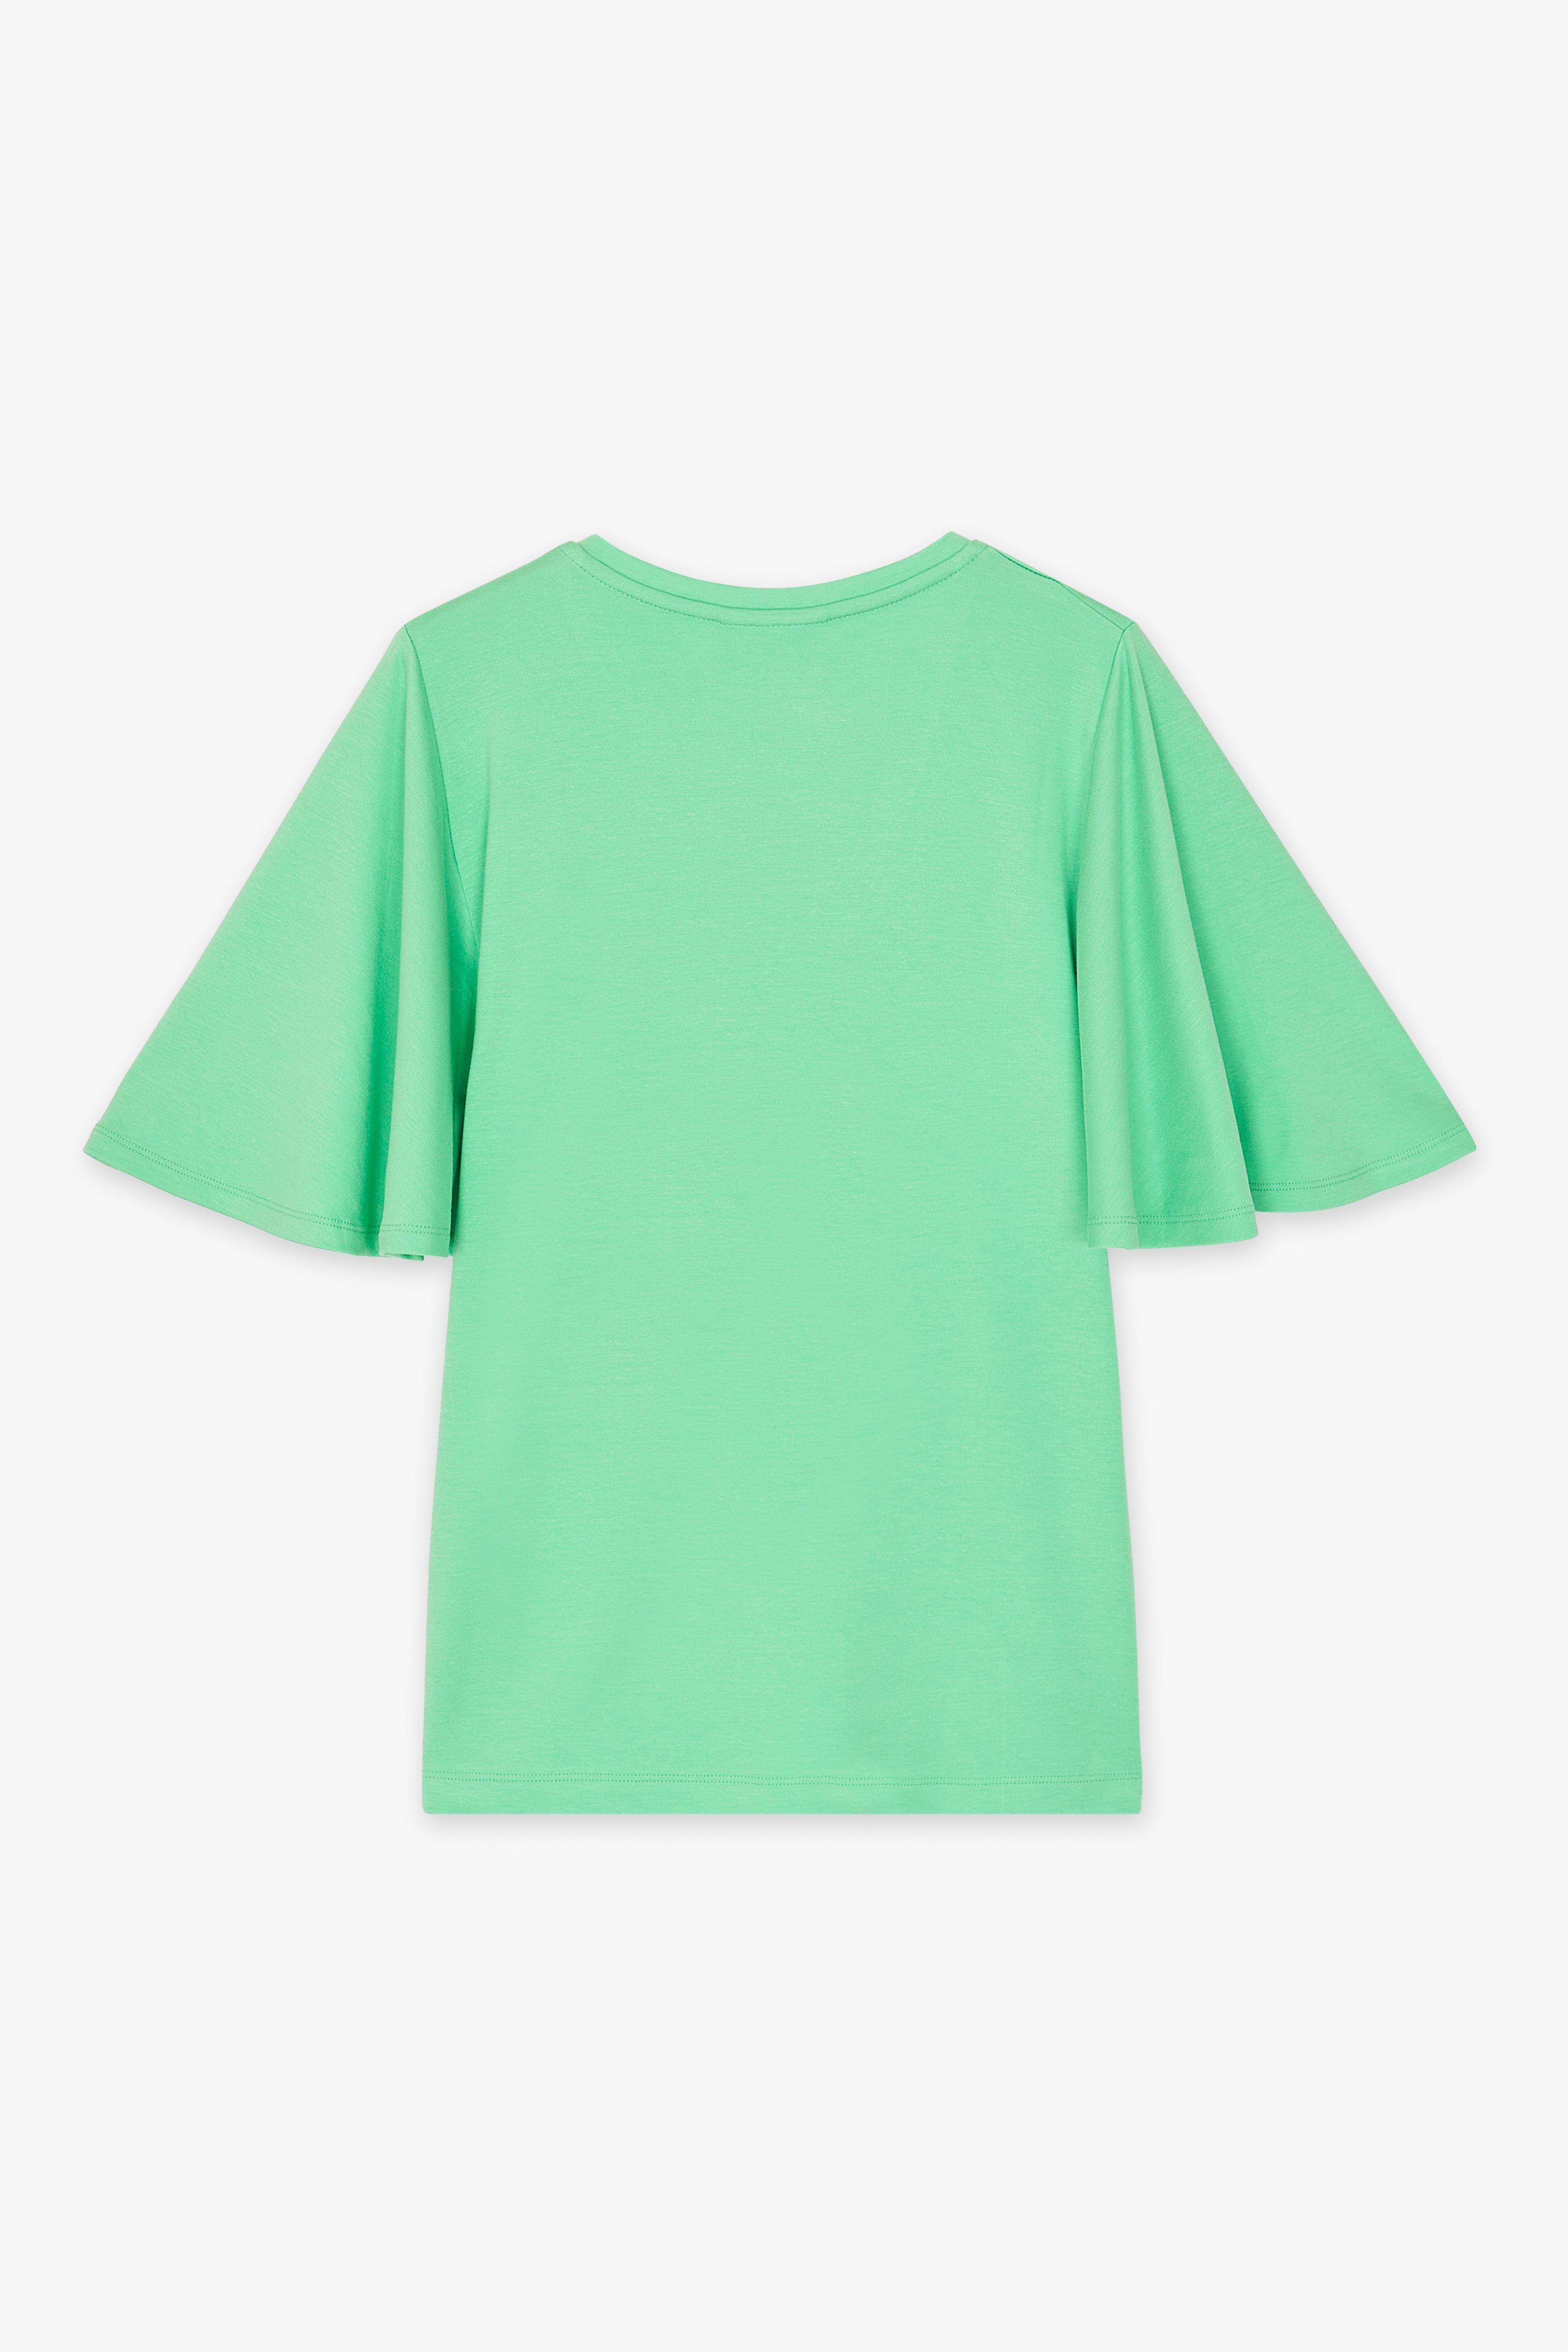 CKS Dames - TIKO - t-shirt à manches courtes - vert clair